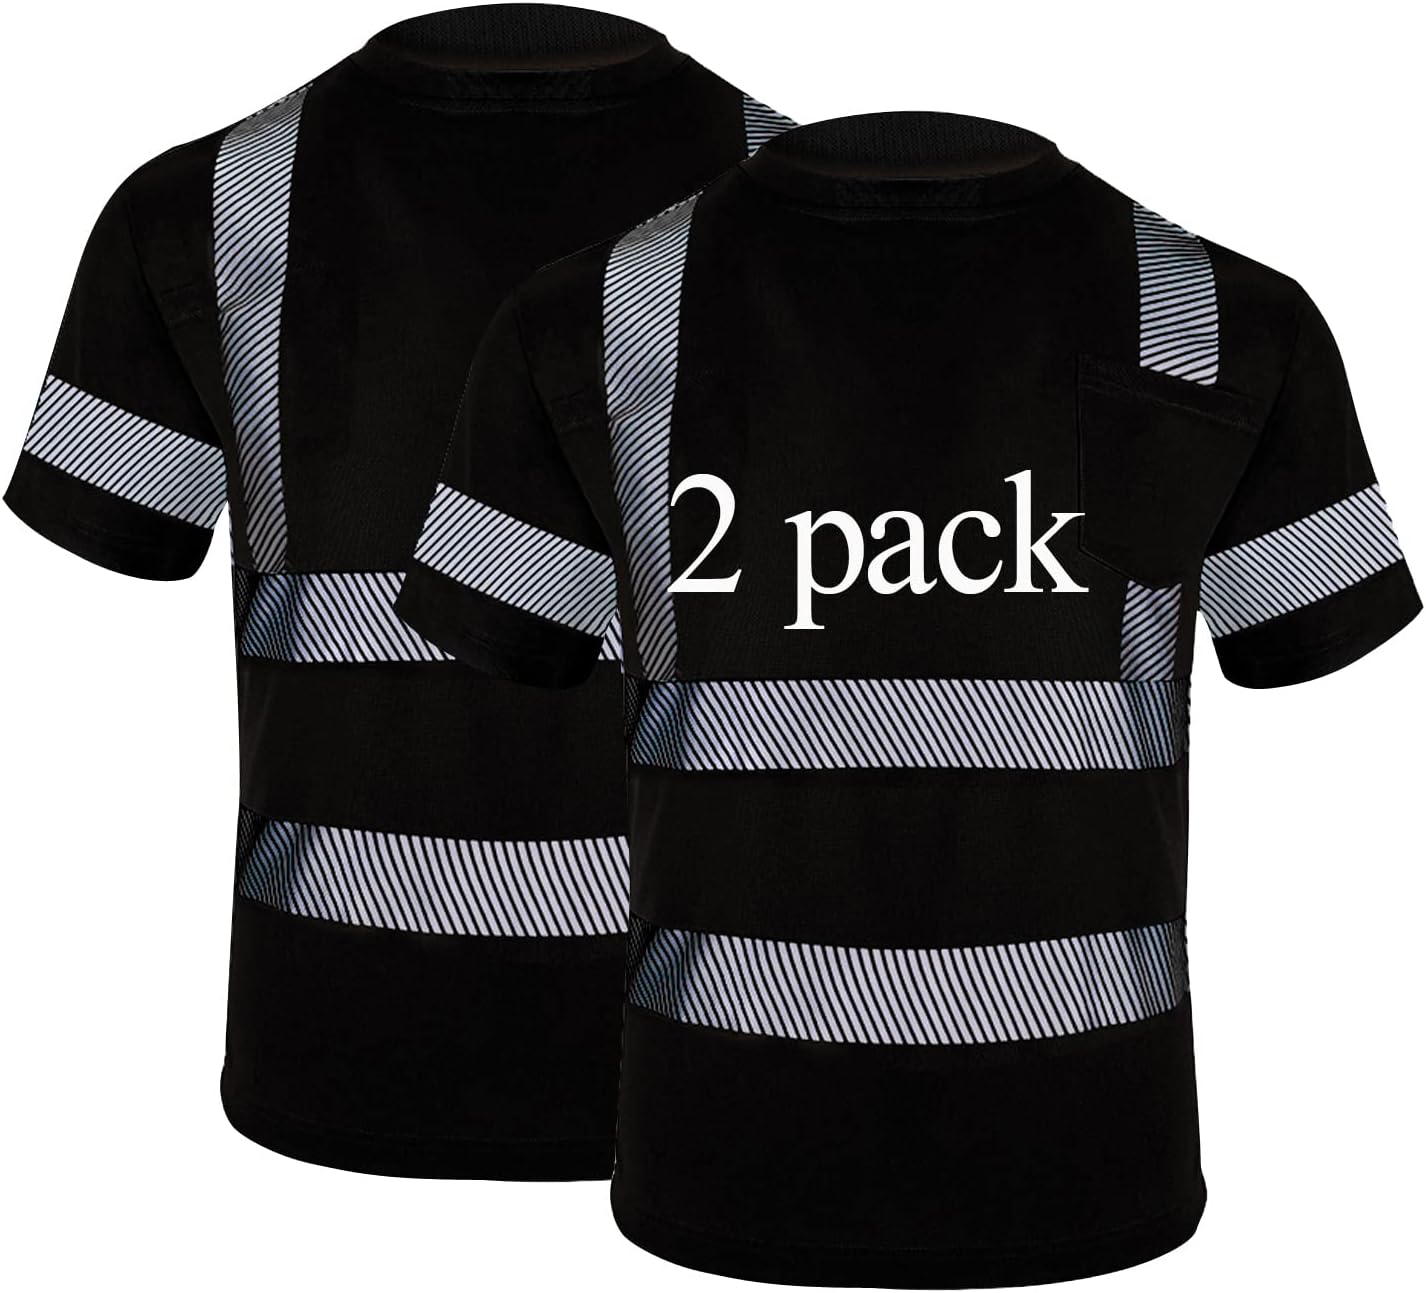 Vendace Safety Shirts for Men 2 Pack High Visibility Reflective Hi Vis Short Sleeve Work Shirt Black(Black,L)